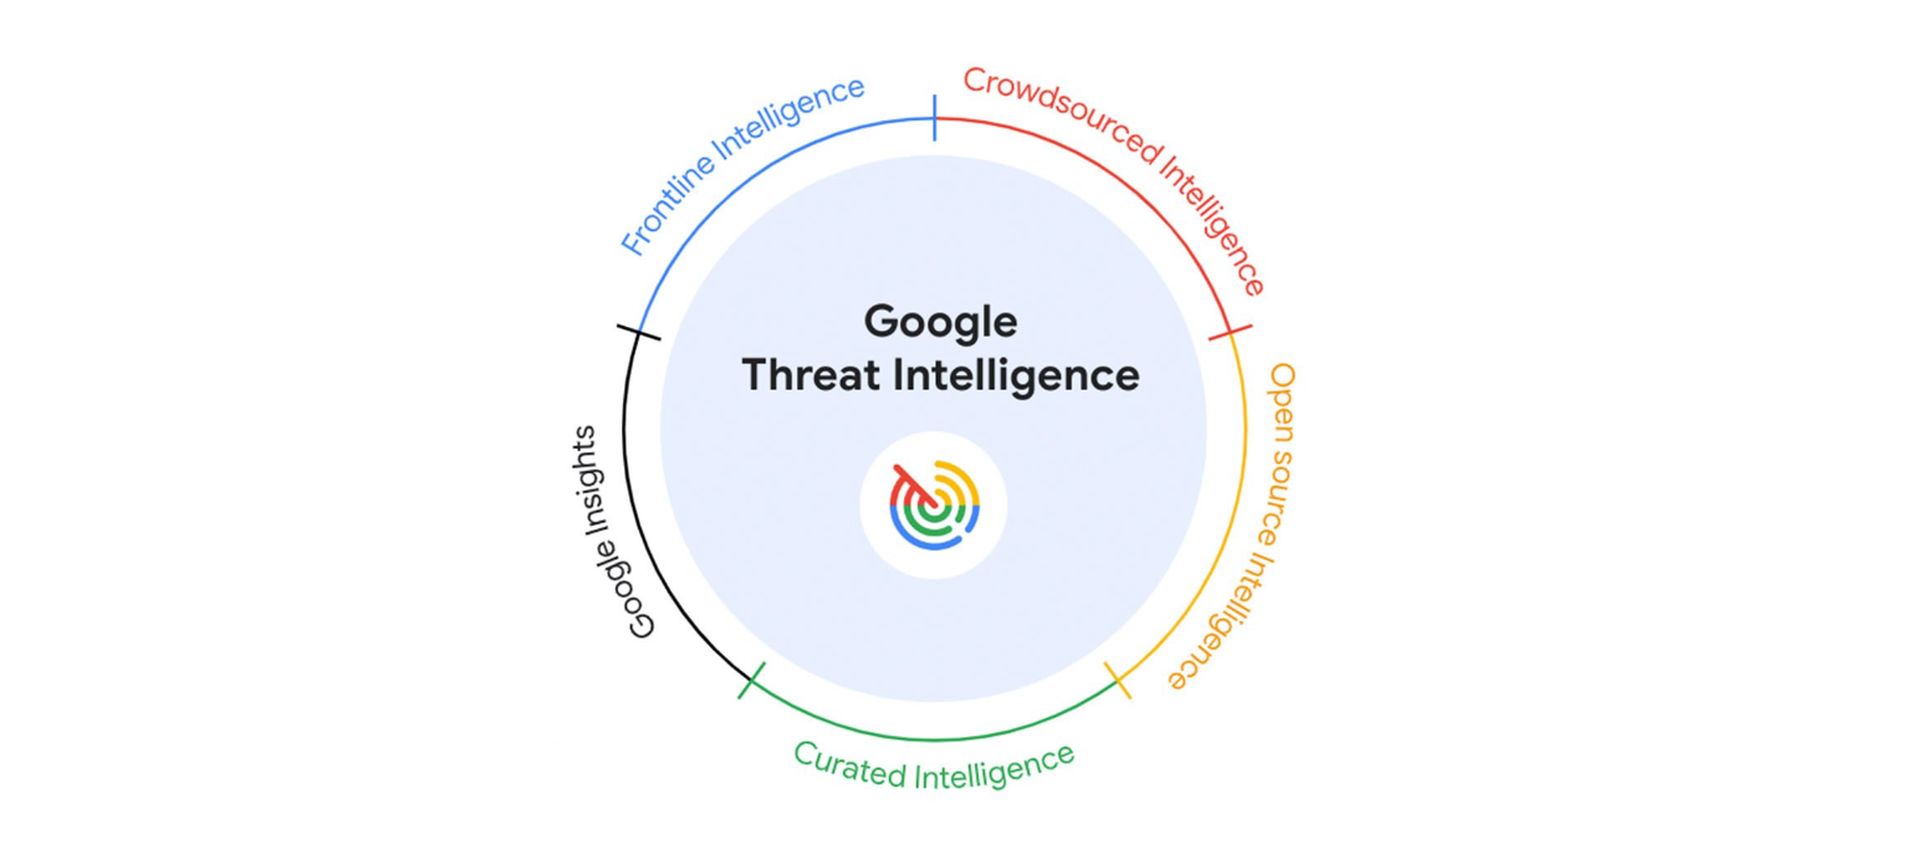 Google stellt eine KI-gestützte Sicherheitslösung vor: Threat Intelligence